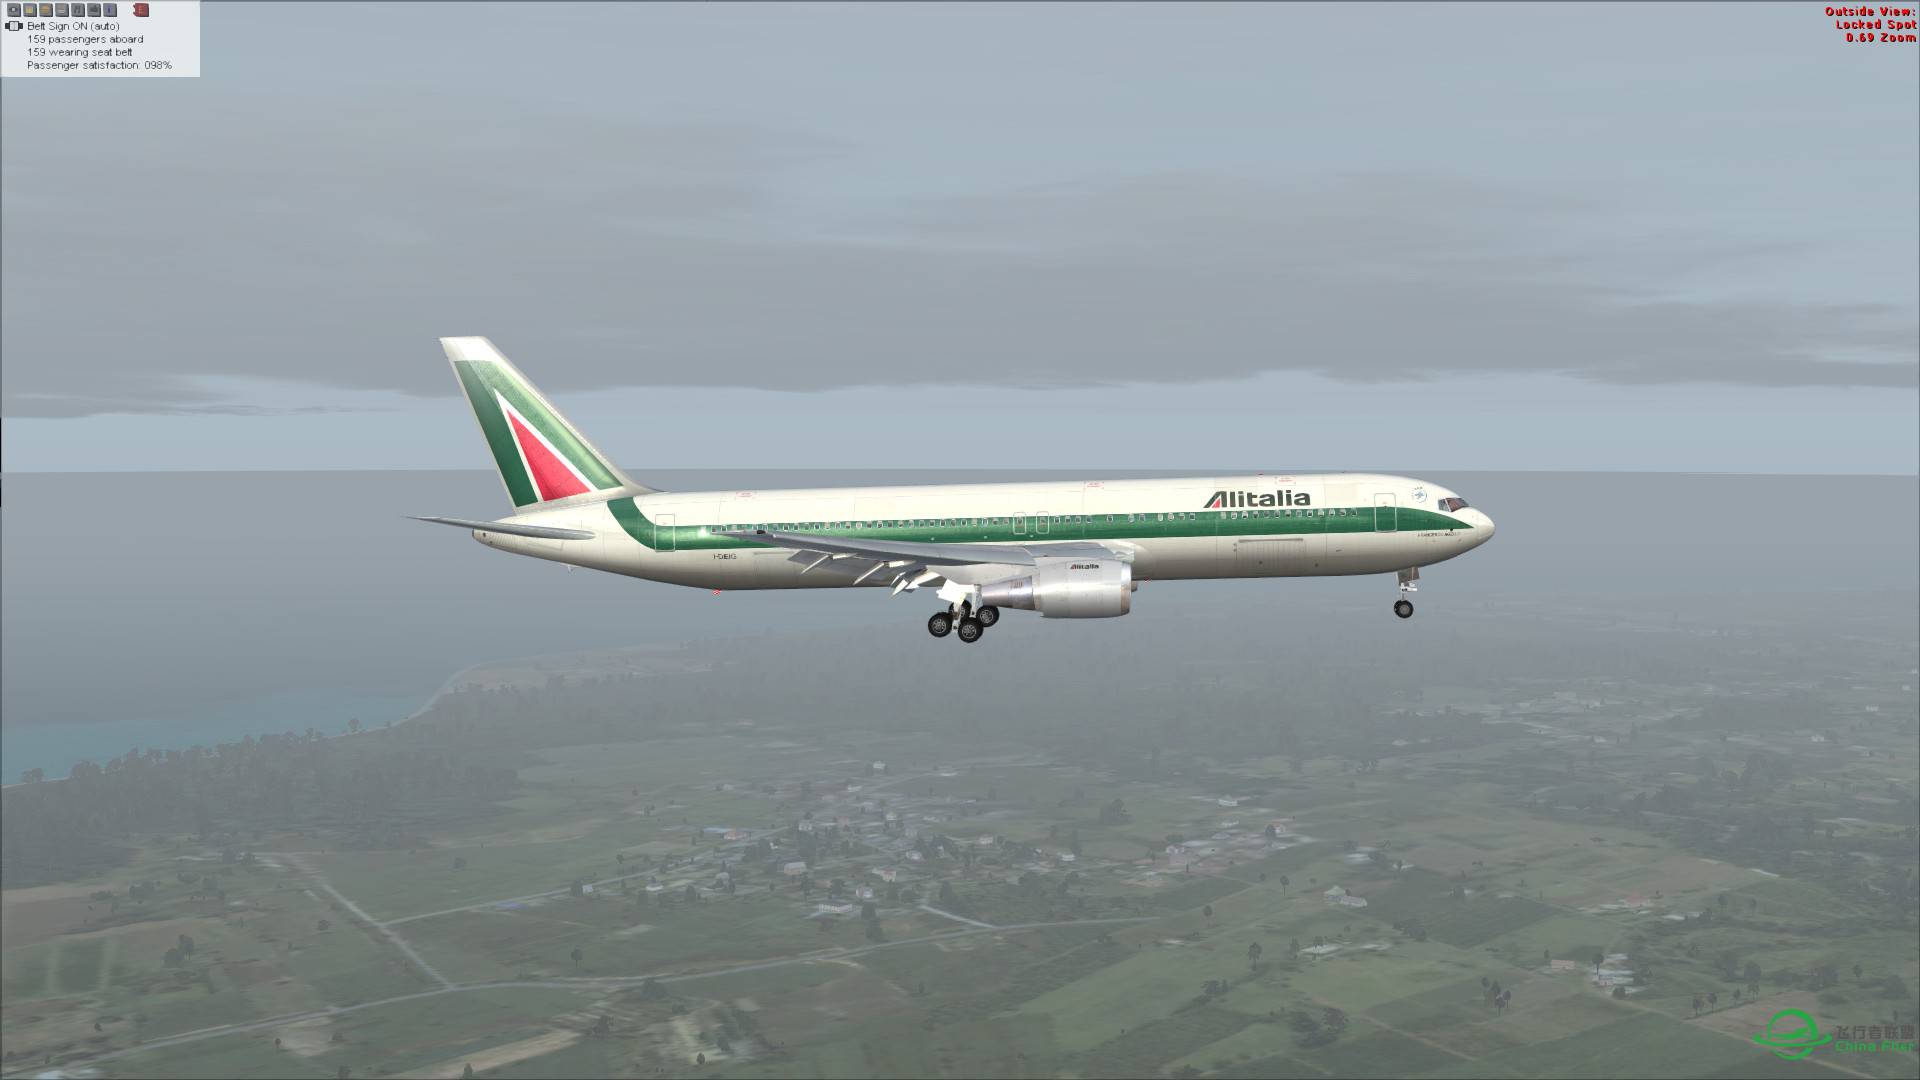 意大利航空 767-300ER 罗马-吉隆坡-6588 